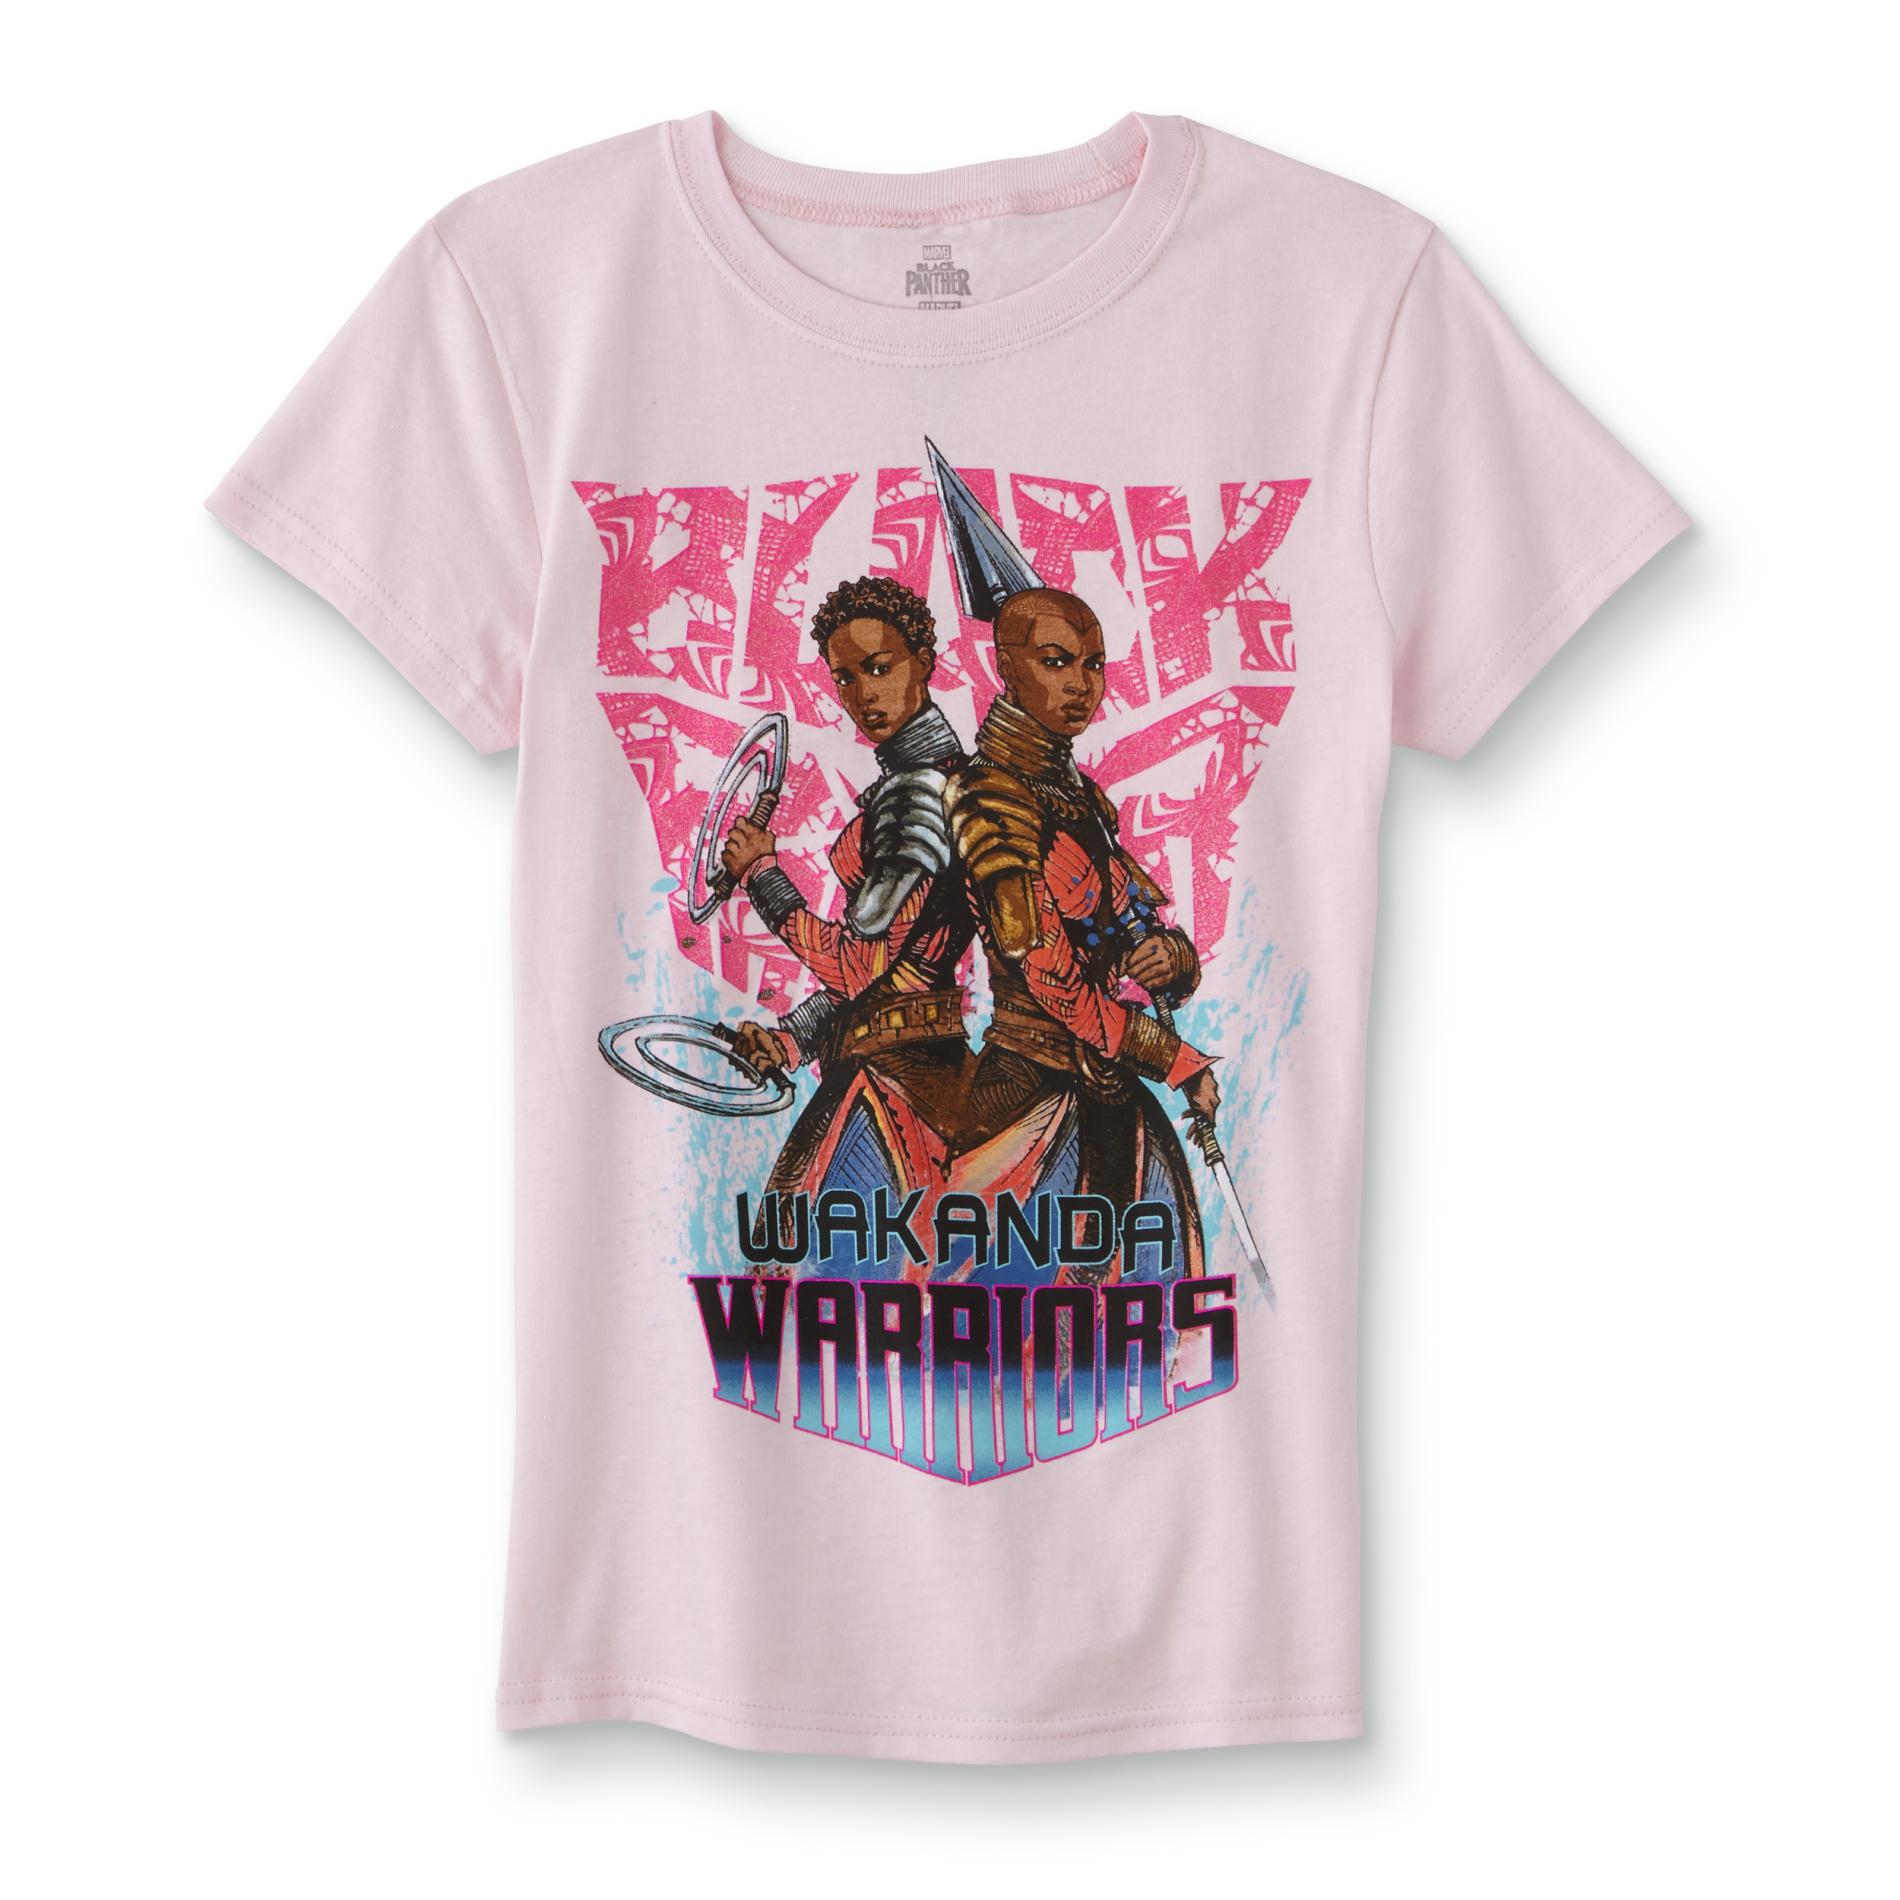 Black Panther Girls' Graphic T-Shirt - Wakanda Warriors